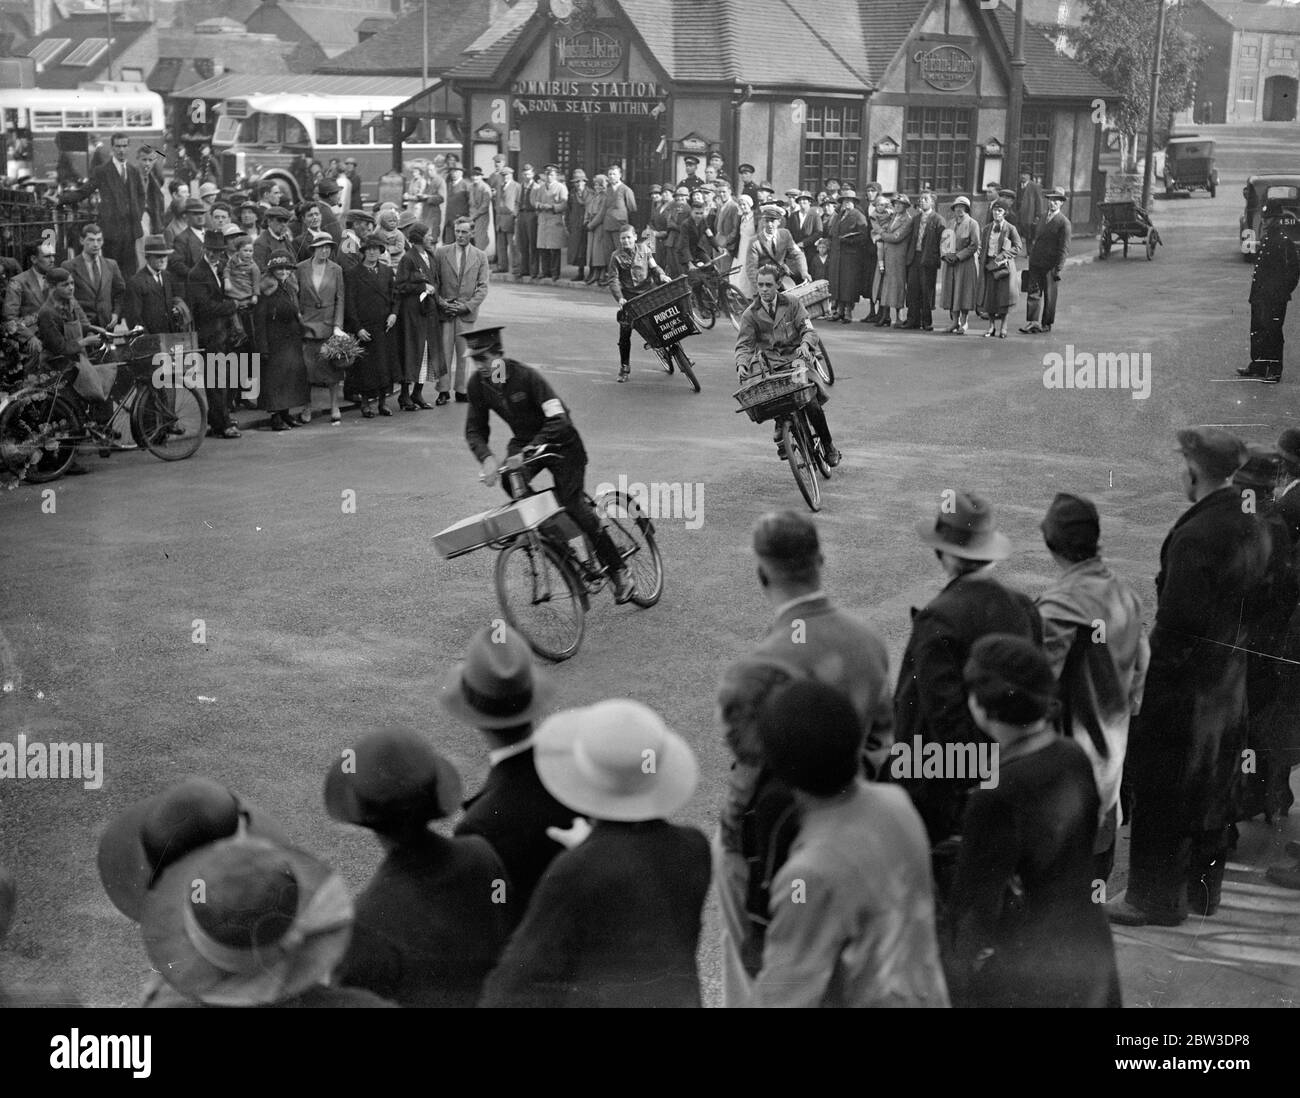 Kurvenfahrt während der Errand Jungen jährlichen Derby in Maidstone . Rundung der Tattenham Corner des Rennens während der Errand Boys Derby in Maidstone . 25. September 1935 Stockfoto